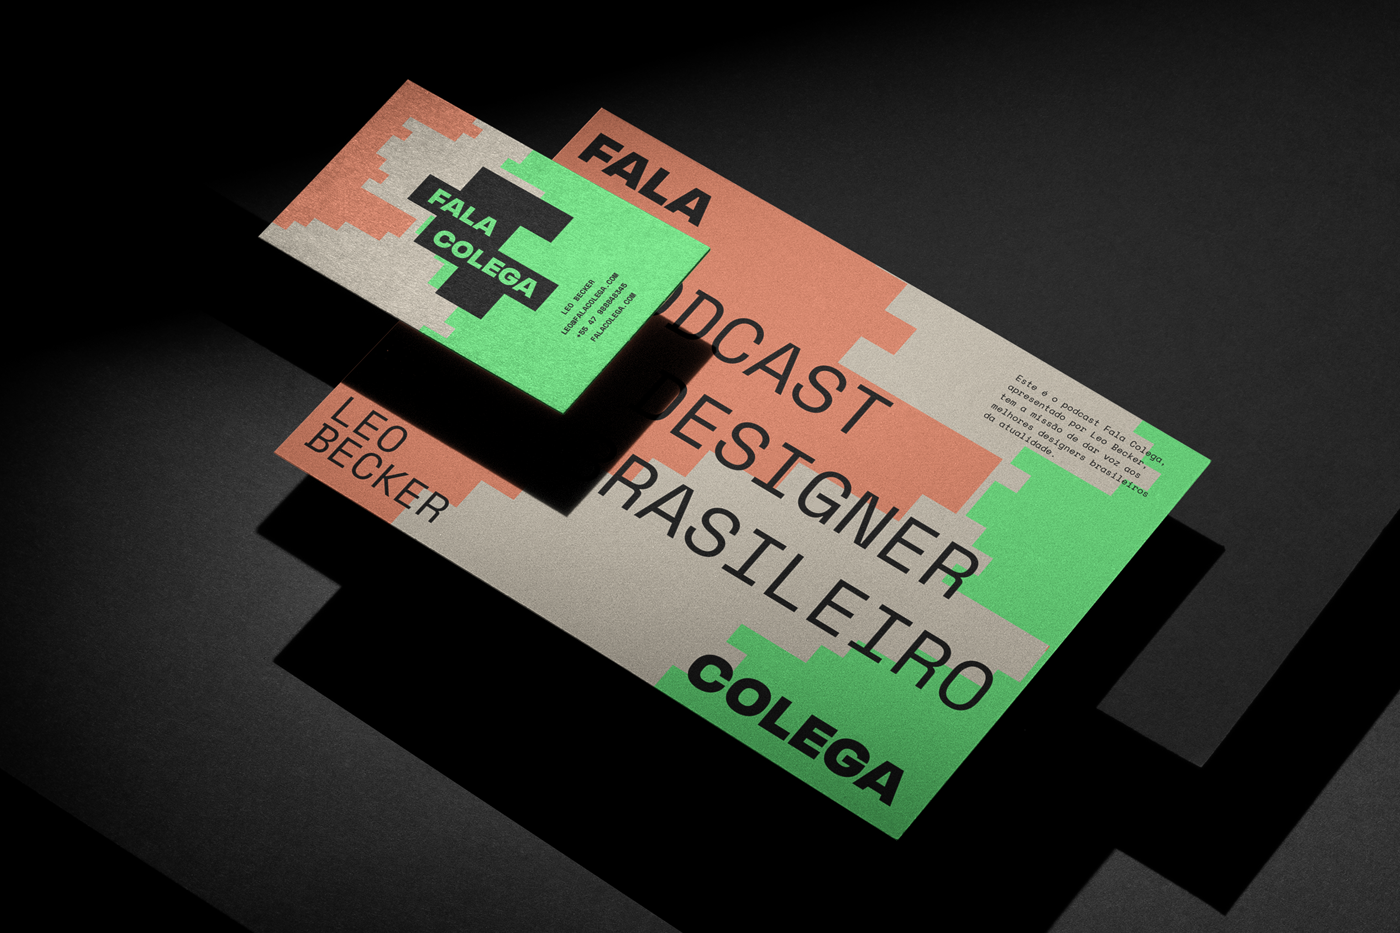 Fala Colega播客品牌视觉设计